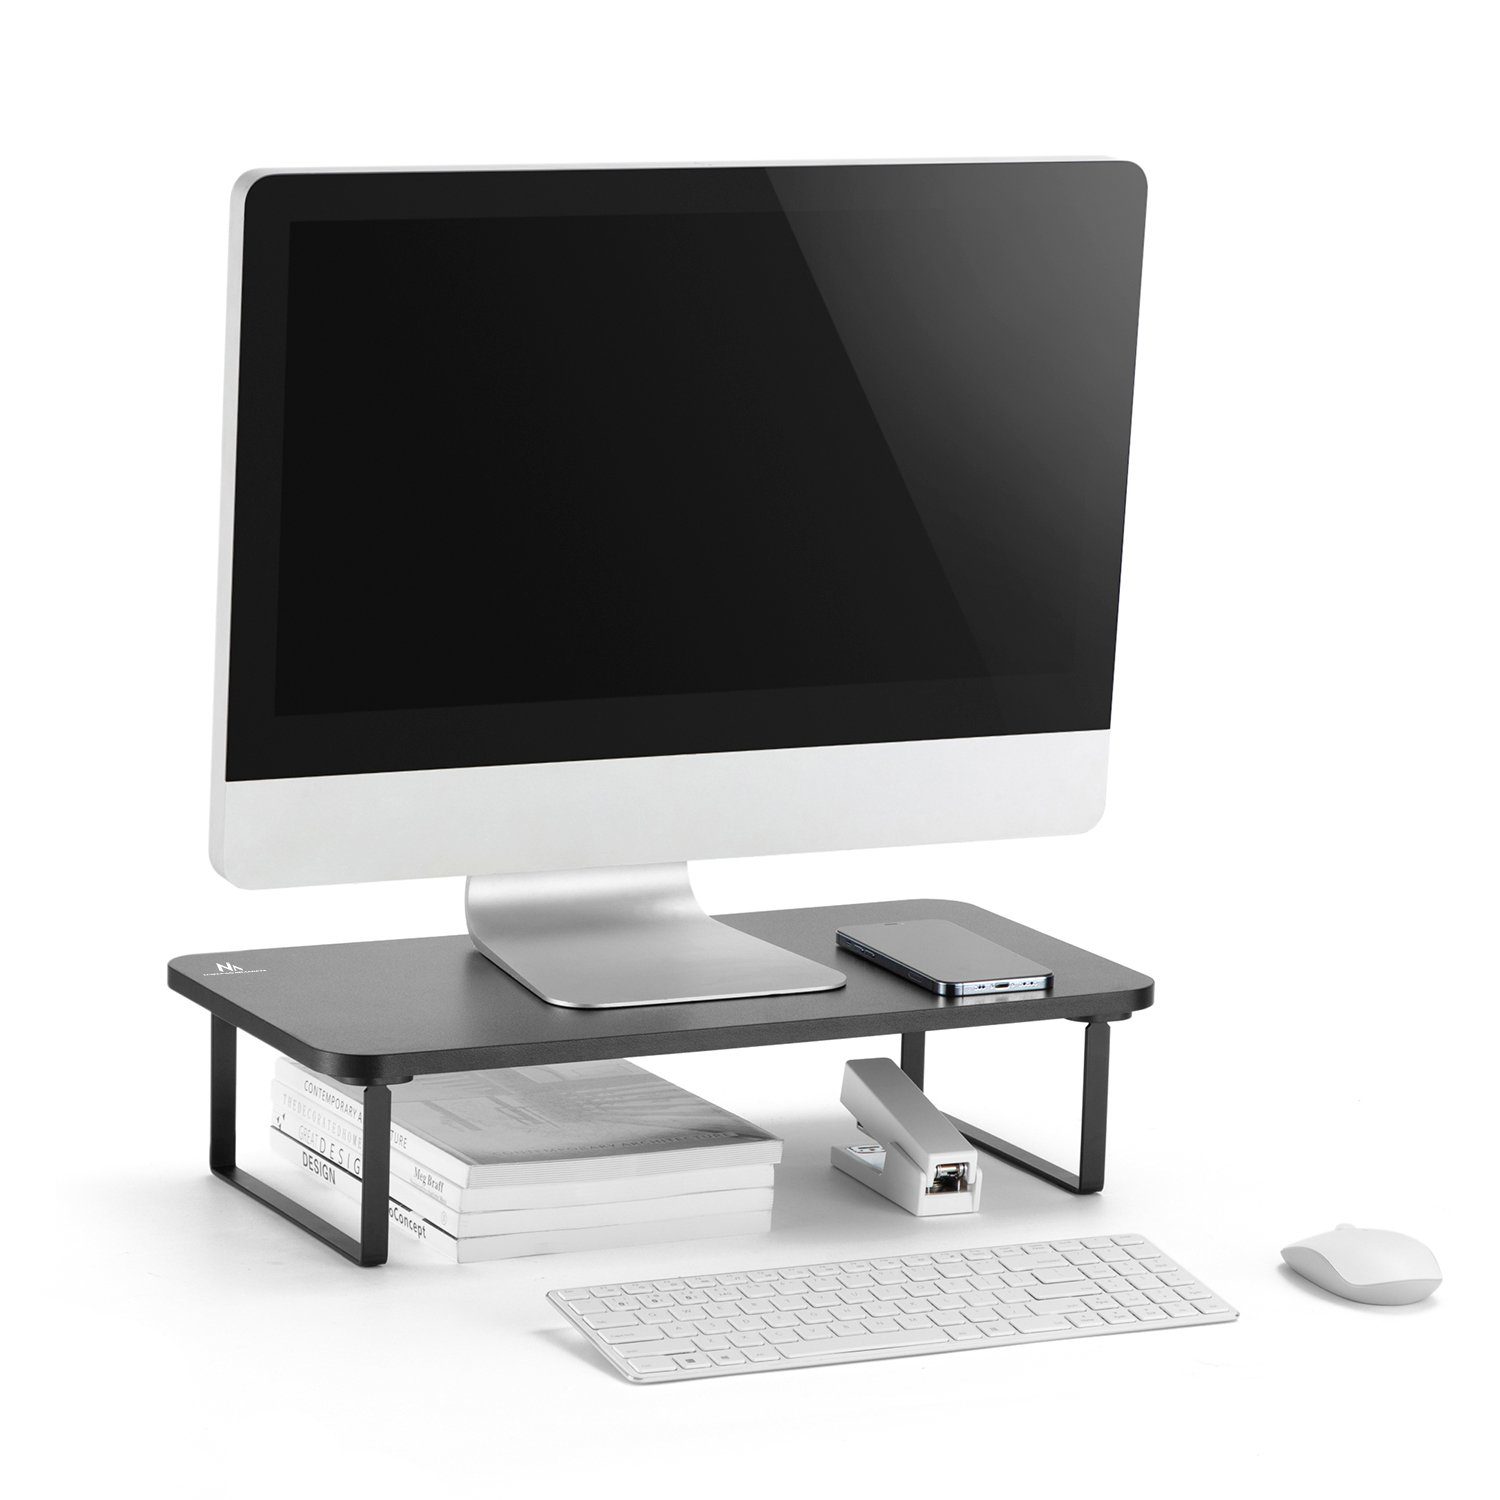 ] x 12,2 26 cm [ 32" u. Schreibtischaufsatz für 50 13"- Monitore x MC-933, Maclean Laptops